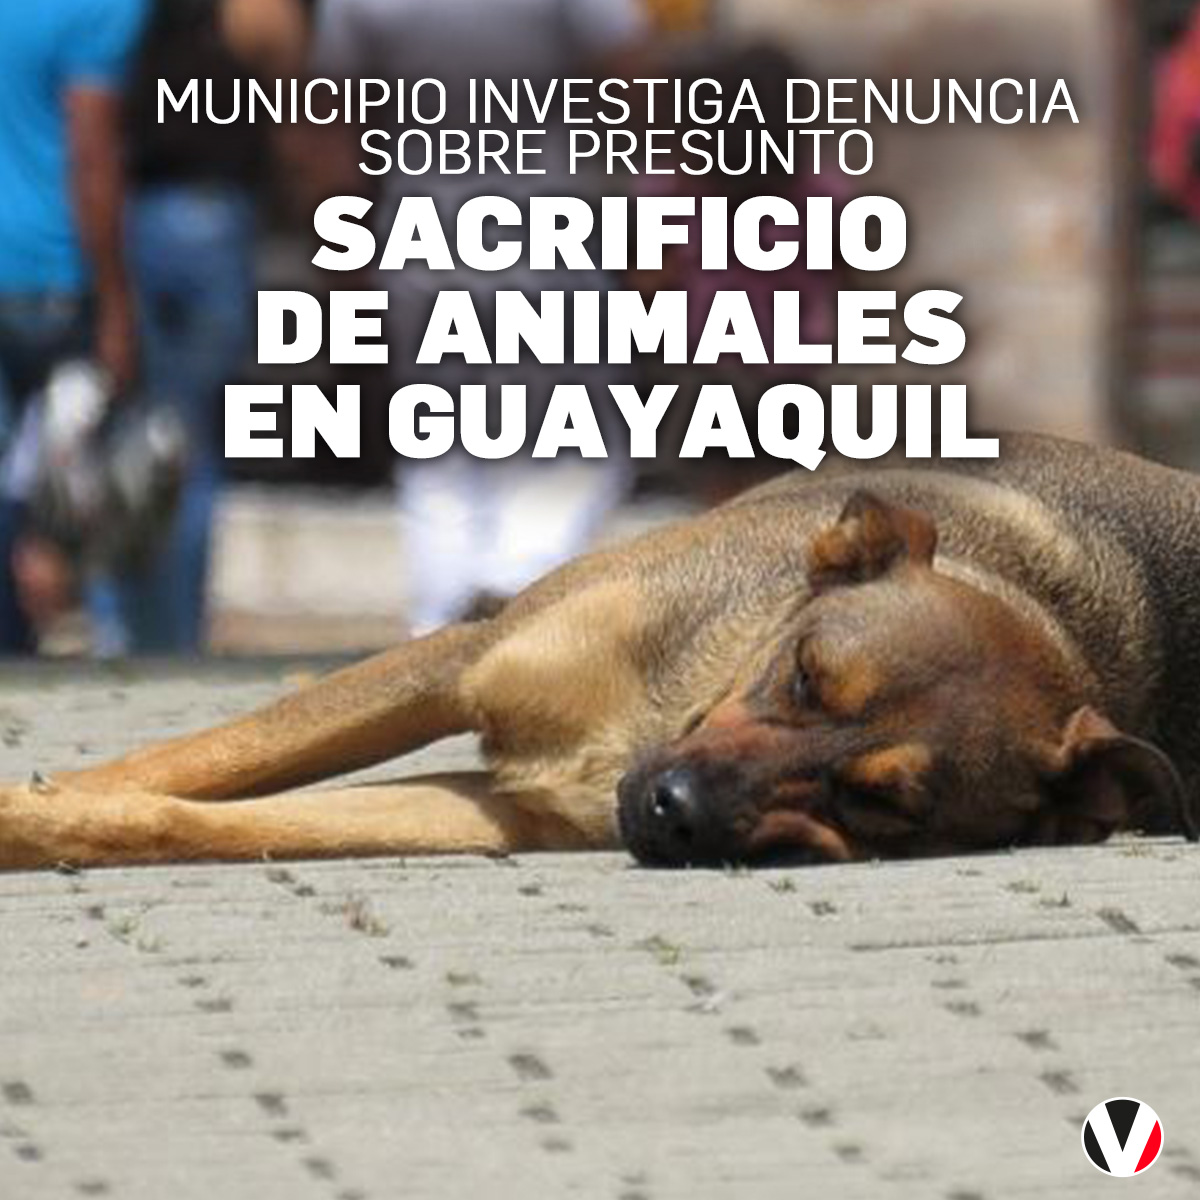 El Municipio de #Guayaquil ha tomado acción ante la denuncia de un presunto caso de sacrificio de animales, en una vivienda ubicada en el sector Kennedy. Esto se ha informado: bit.ly/3JF3uEp